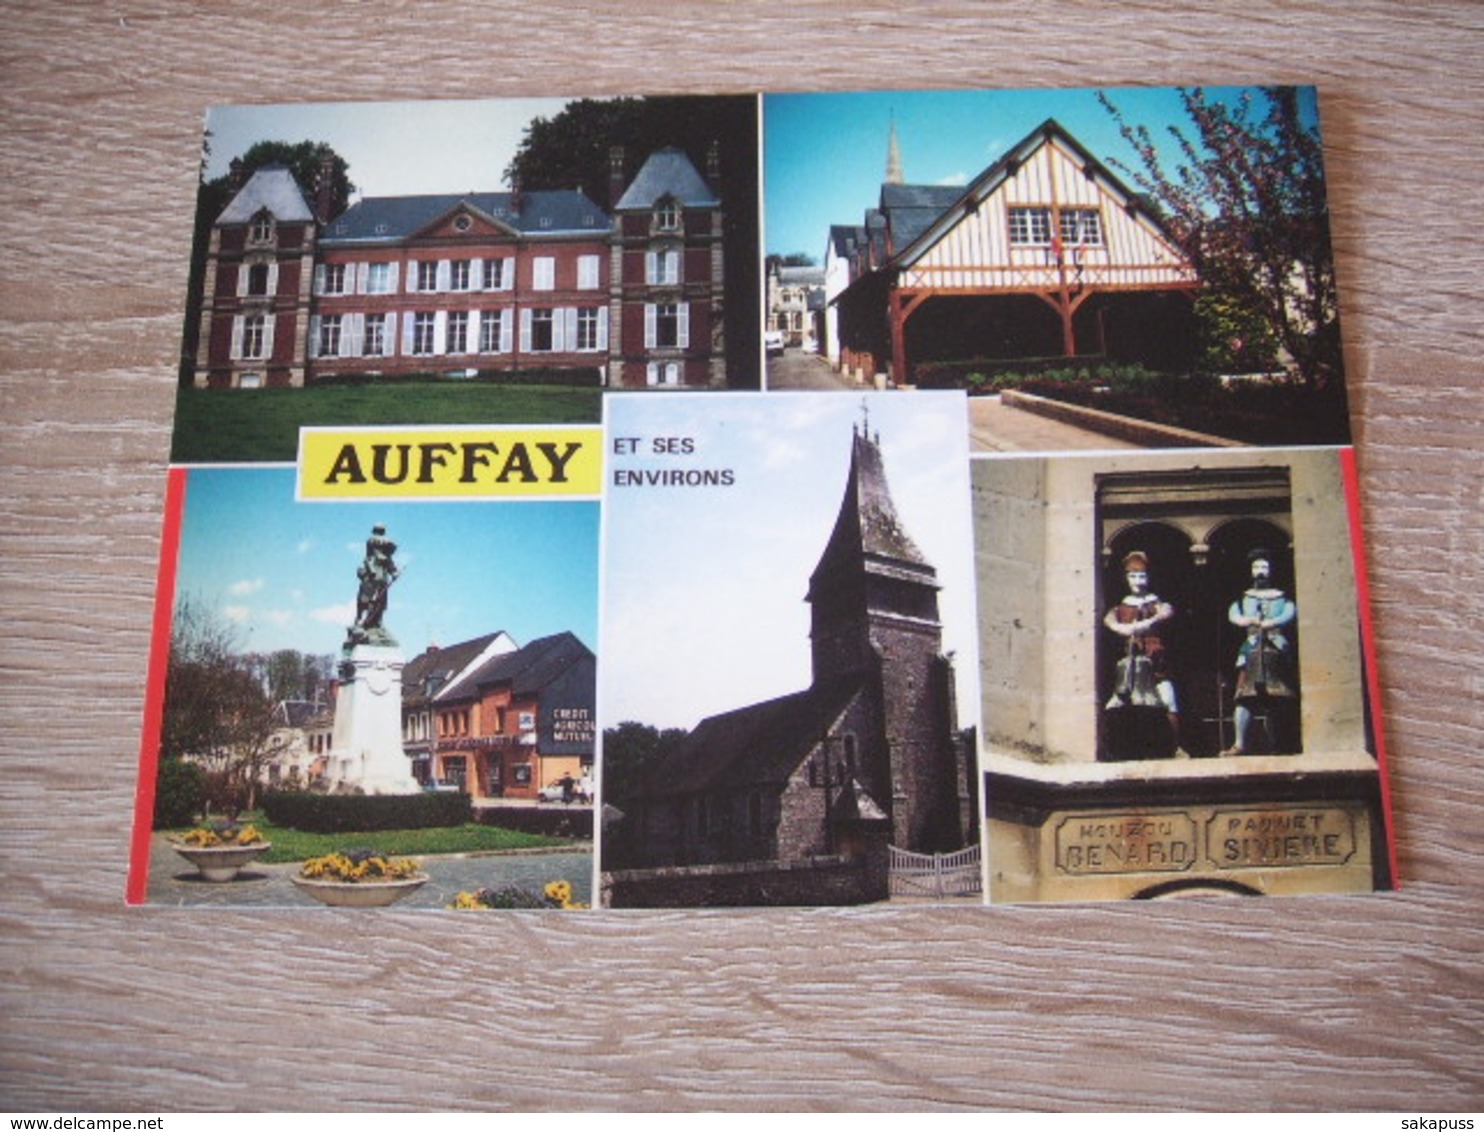 AUFFAY (76) - (Réf. 26.201) - Auffay